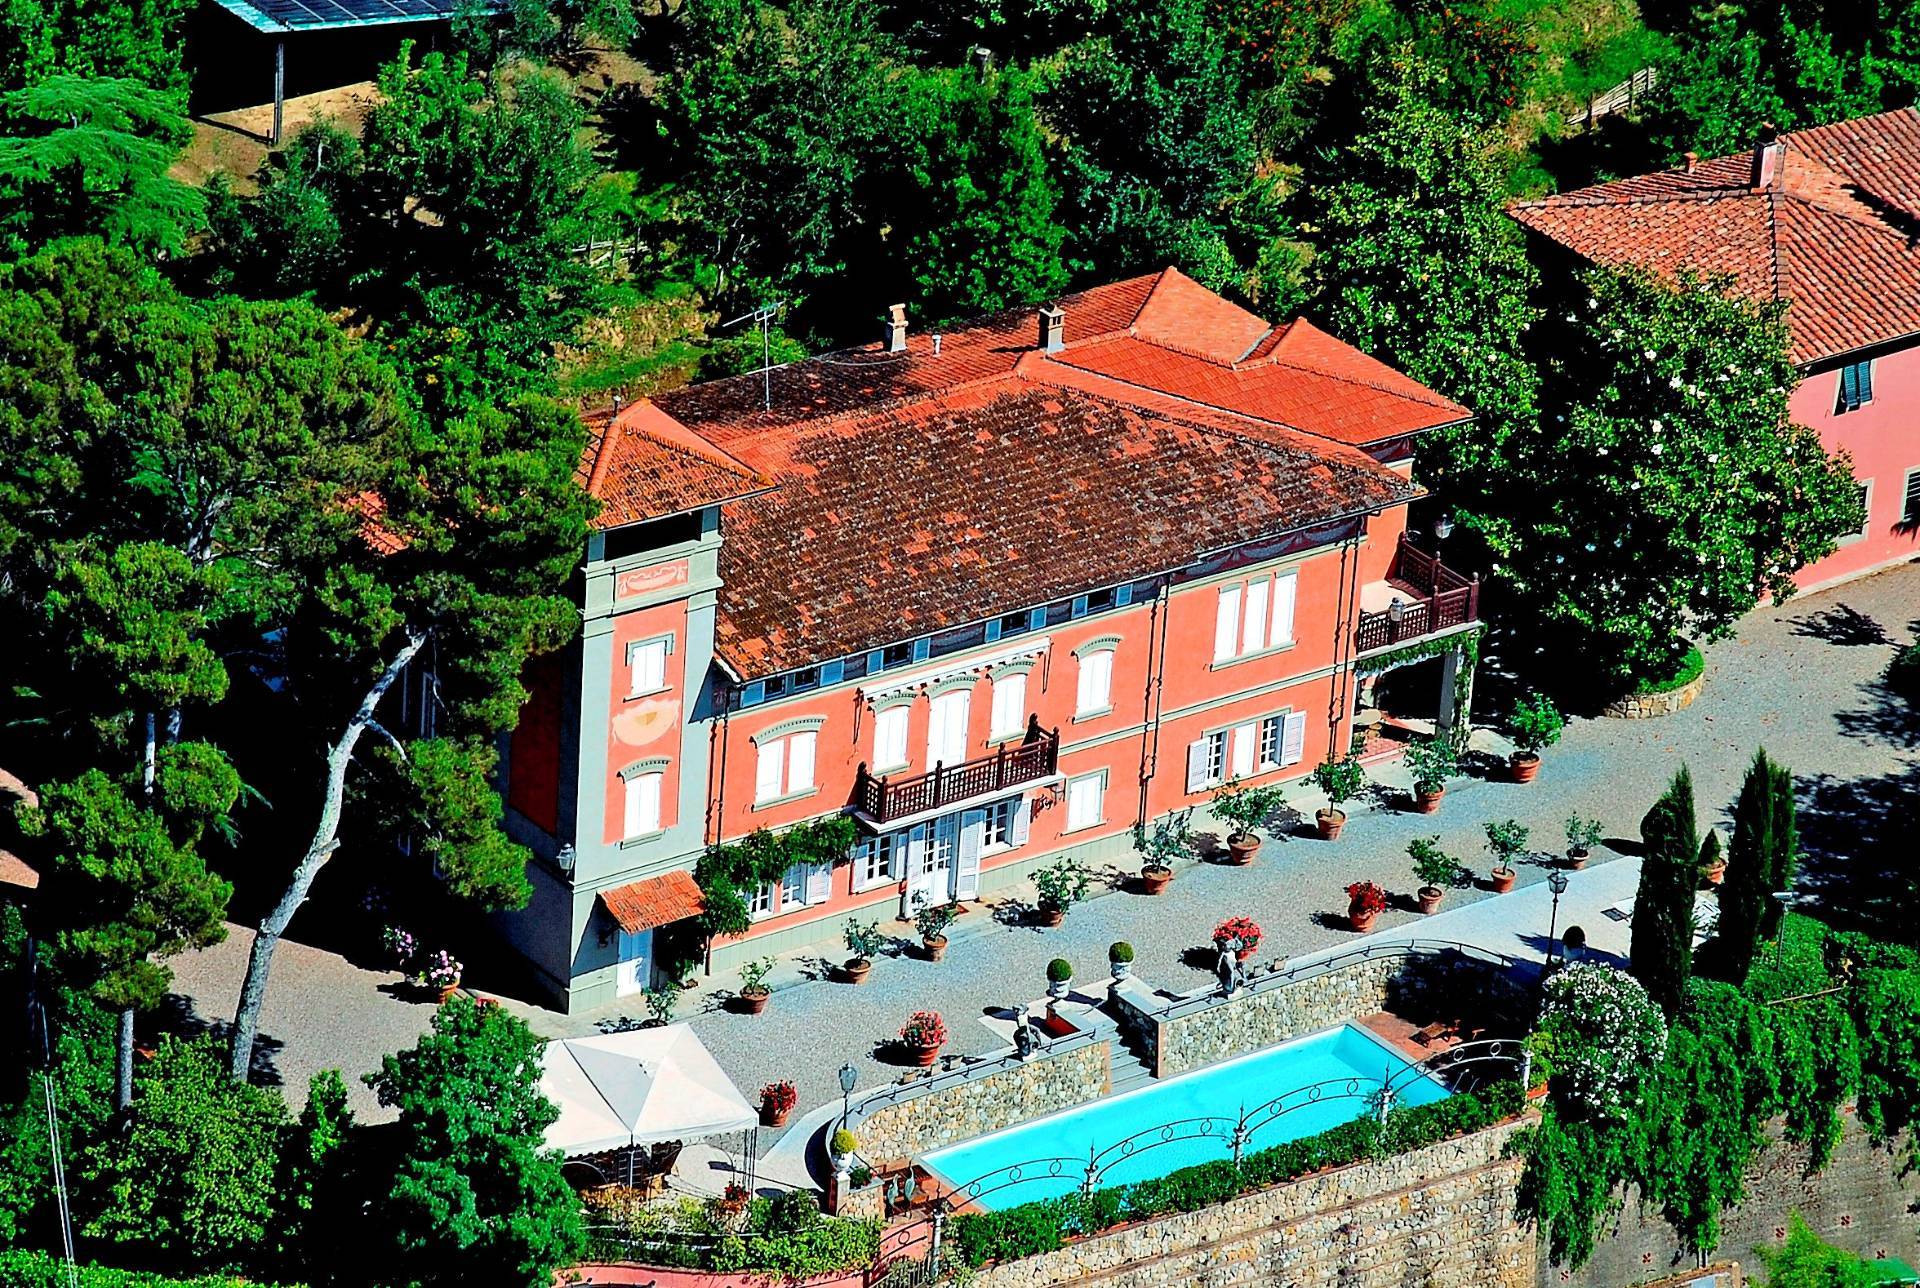 1425-Villa di lusso ristrutturata con ampio parco piscina tennis e vista panoramica-Casciana Terme Lari-1 Agenzia Immobiliare ASIP